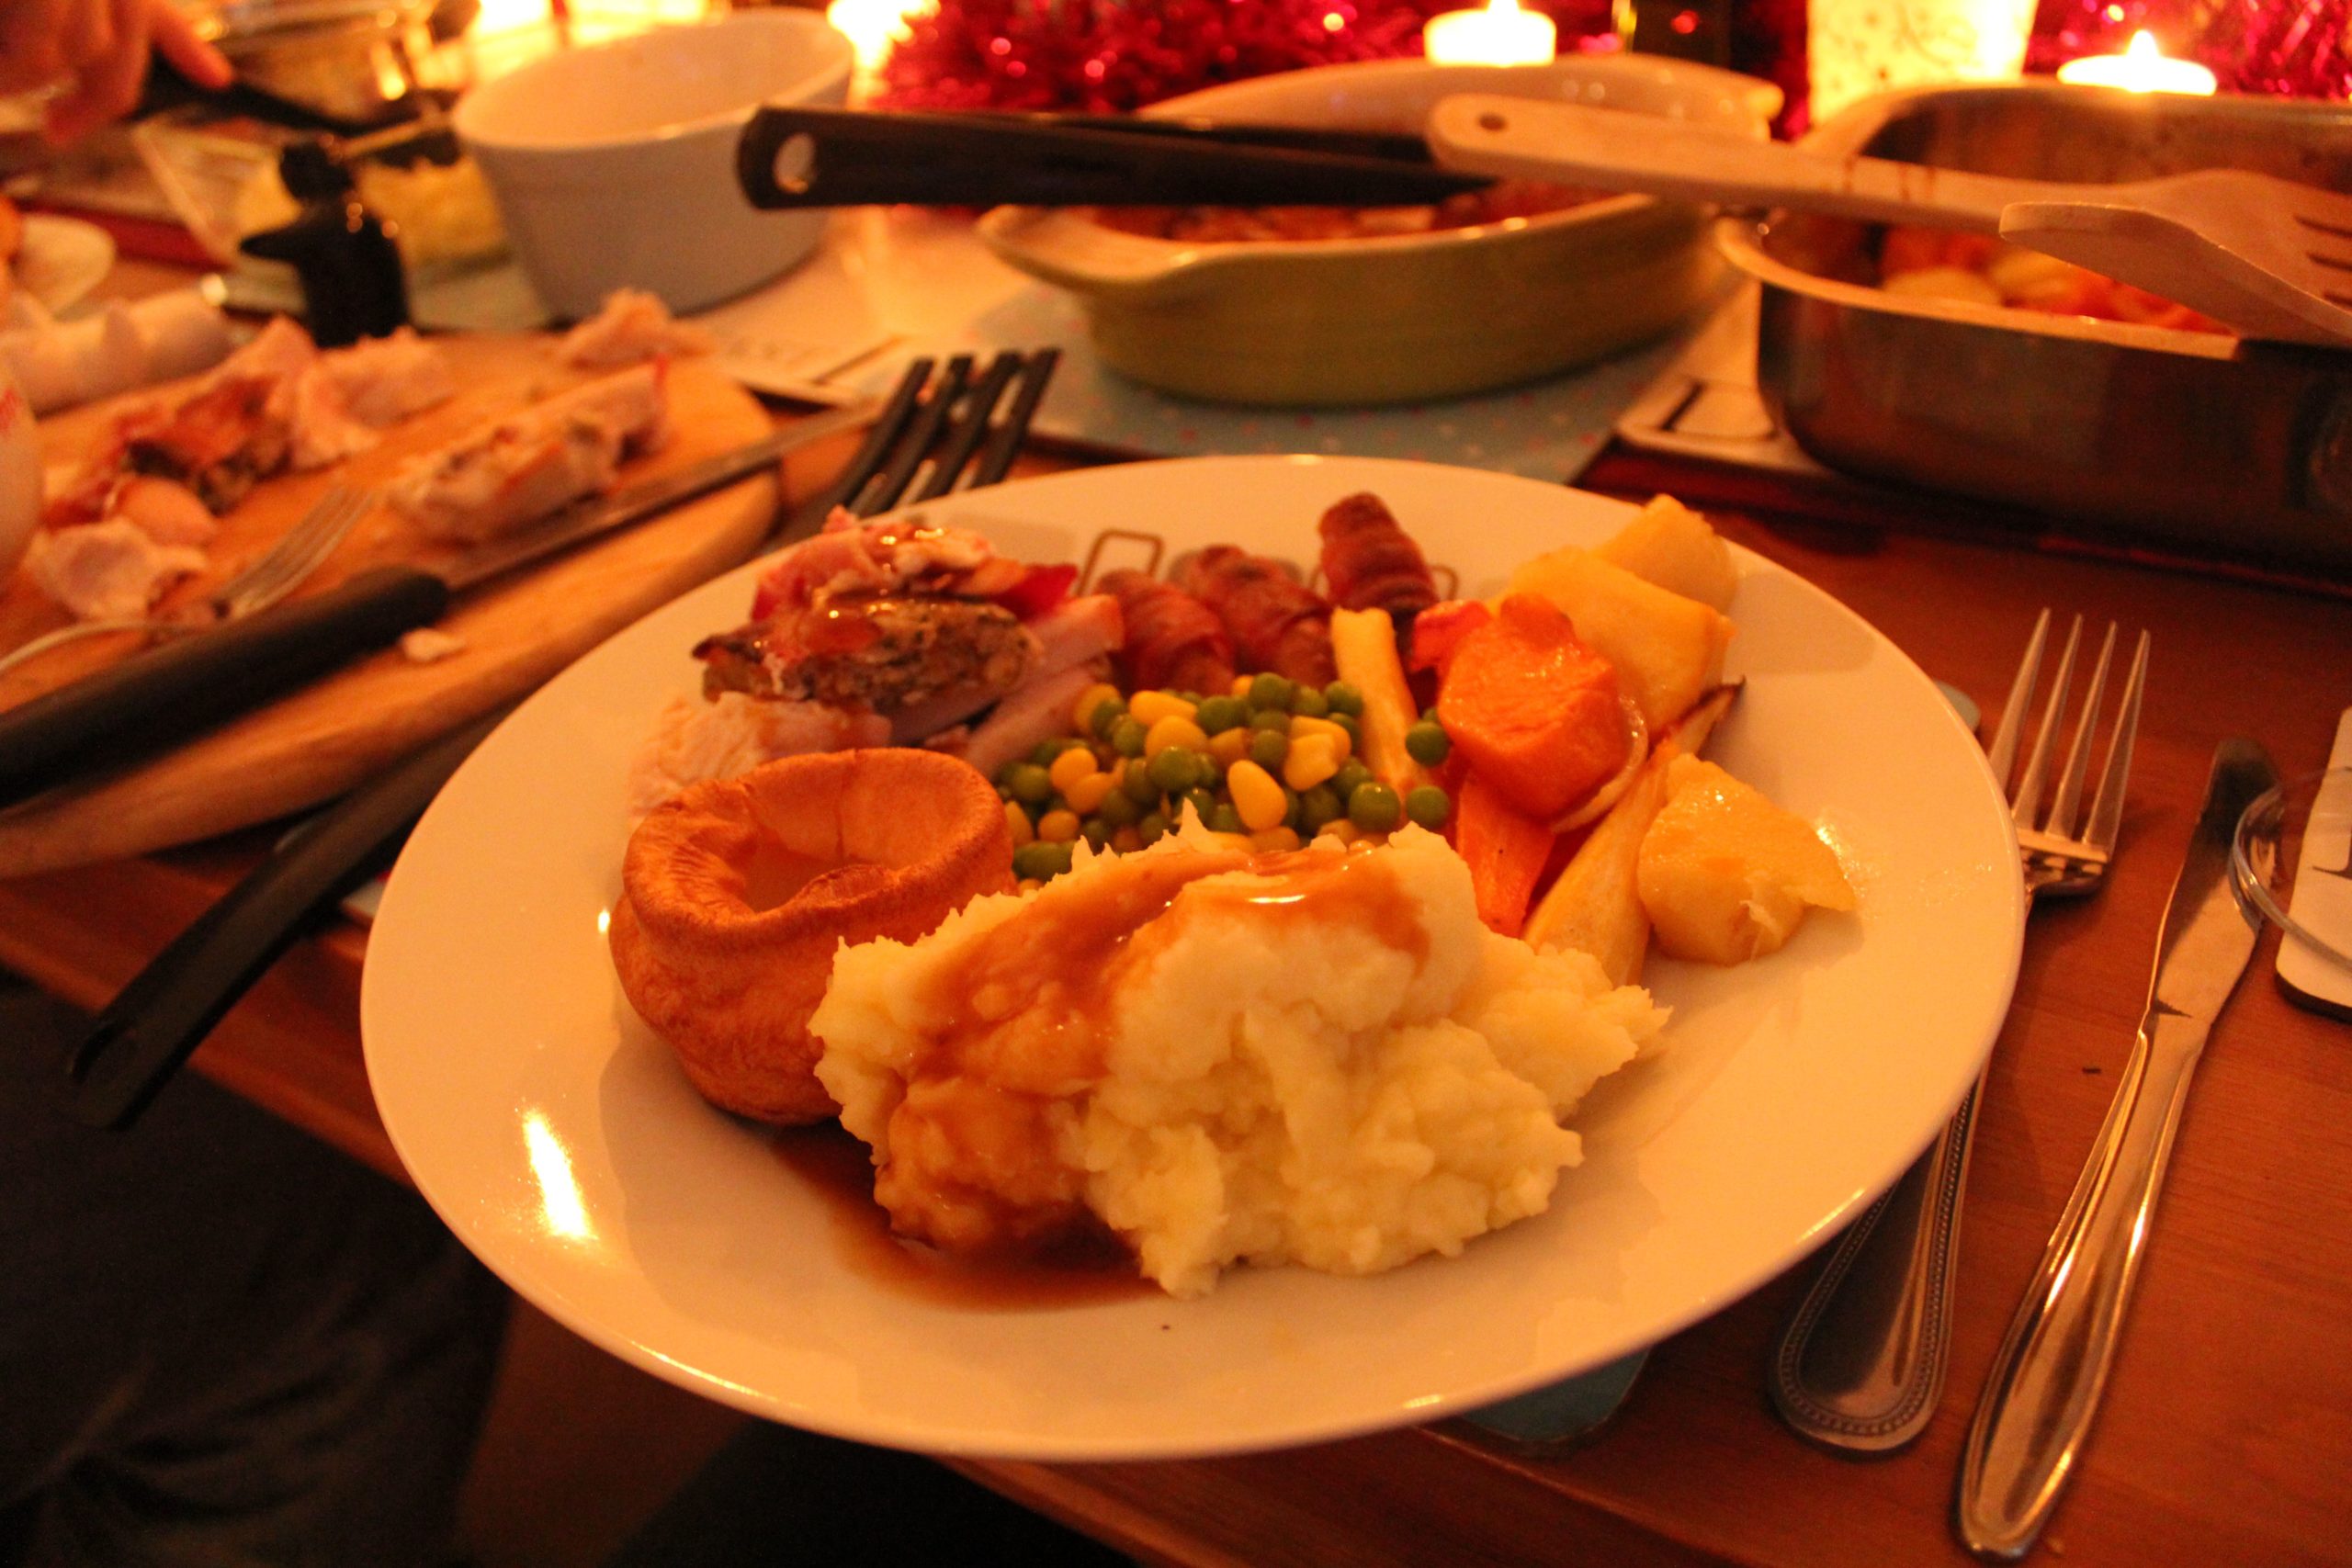 A Traditional British Christmas Dinner Menu | Allrecipes